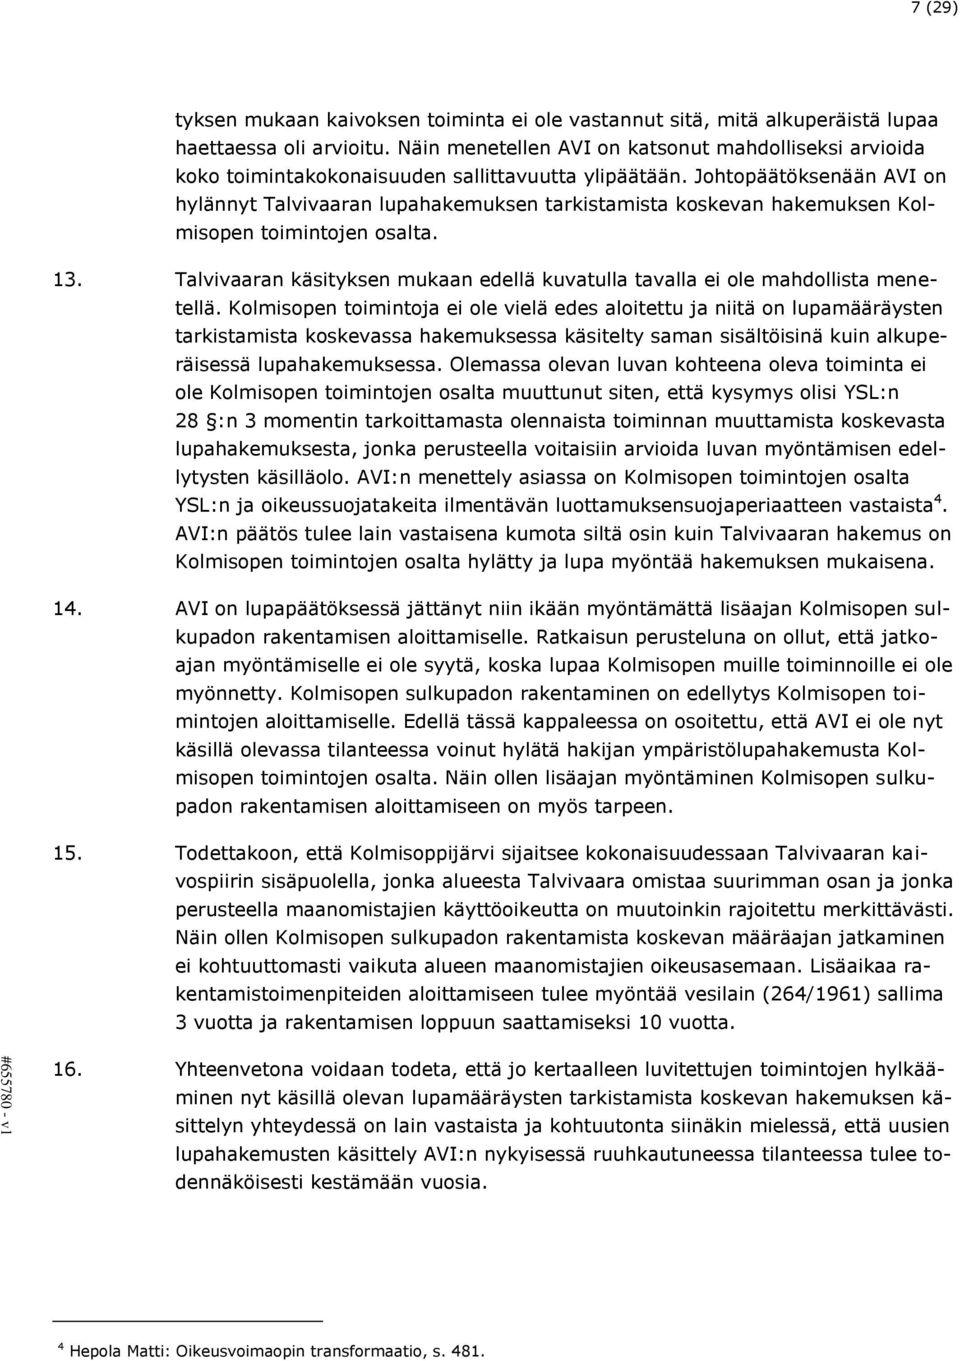 Johtopäätöksenään AVI on hylännyt Talvivaaran lupahakemuksen tarkistamista koskevan hakemuksen Kolmisopen toimintojen osalta. 13.